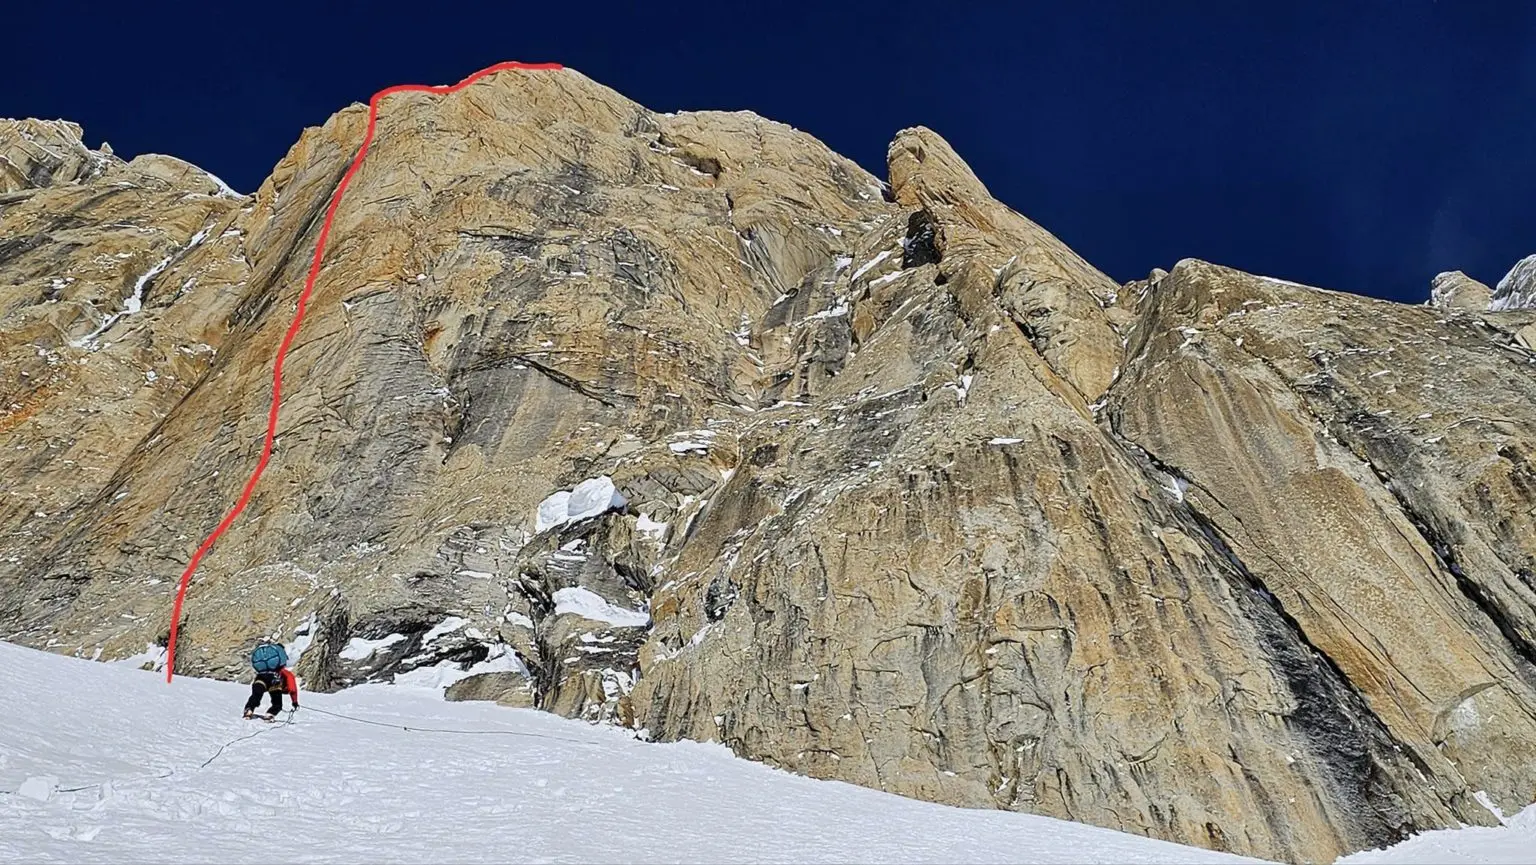 маршрут "Zimne wojny (Cold Wars)" (A3, M5, 980 метрів) на вершину Mooses Tooth. Фото Marcin Tomaszewski